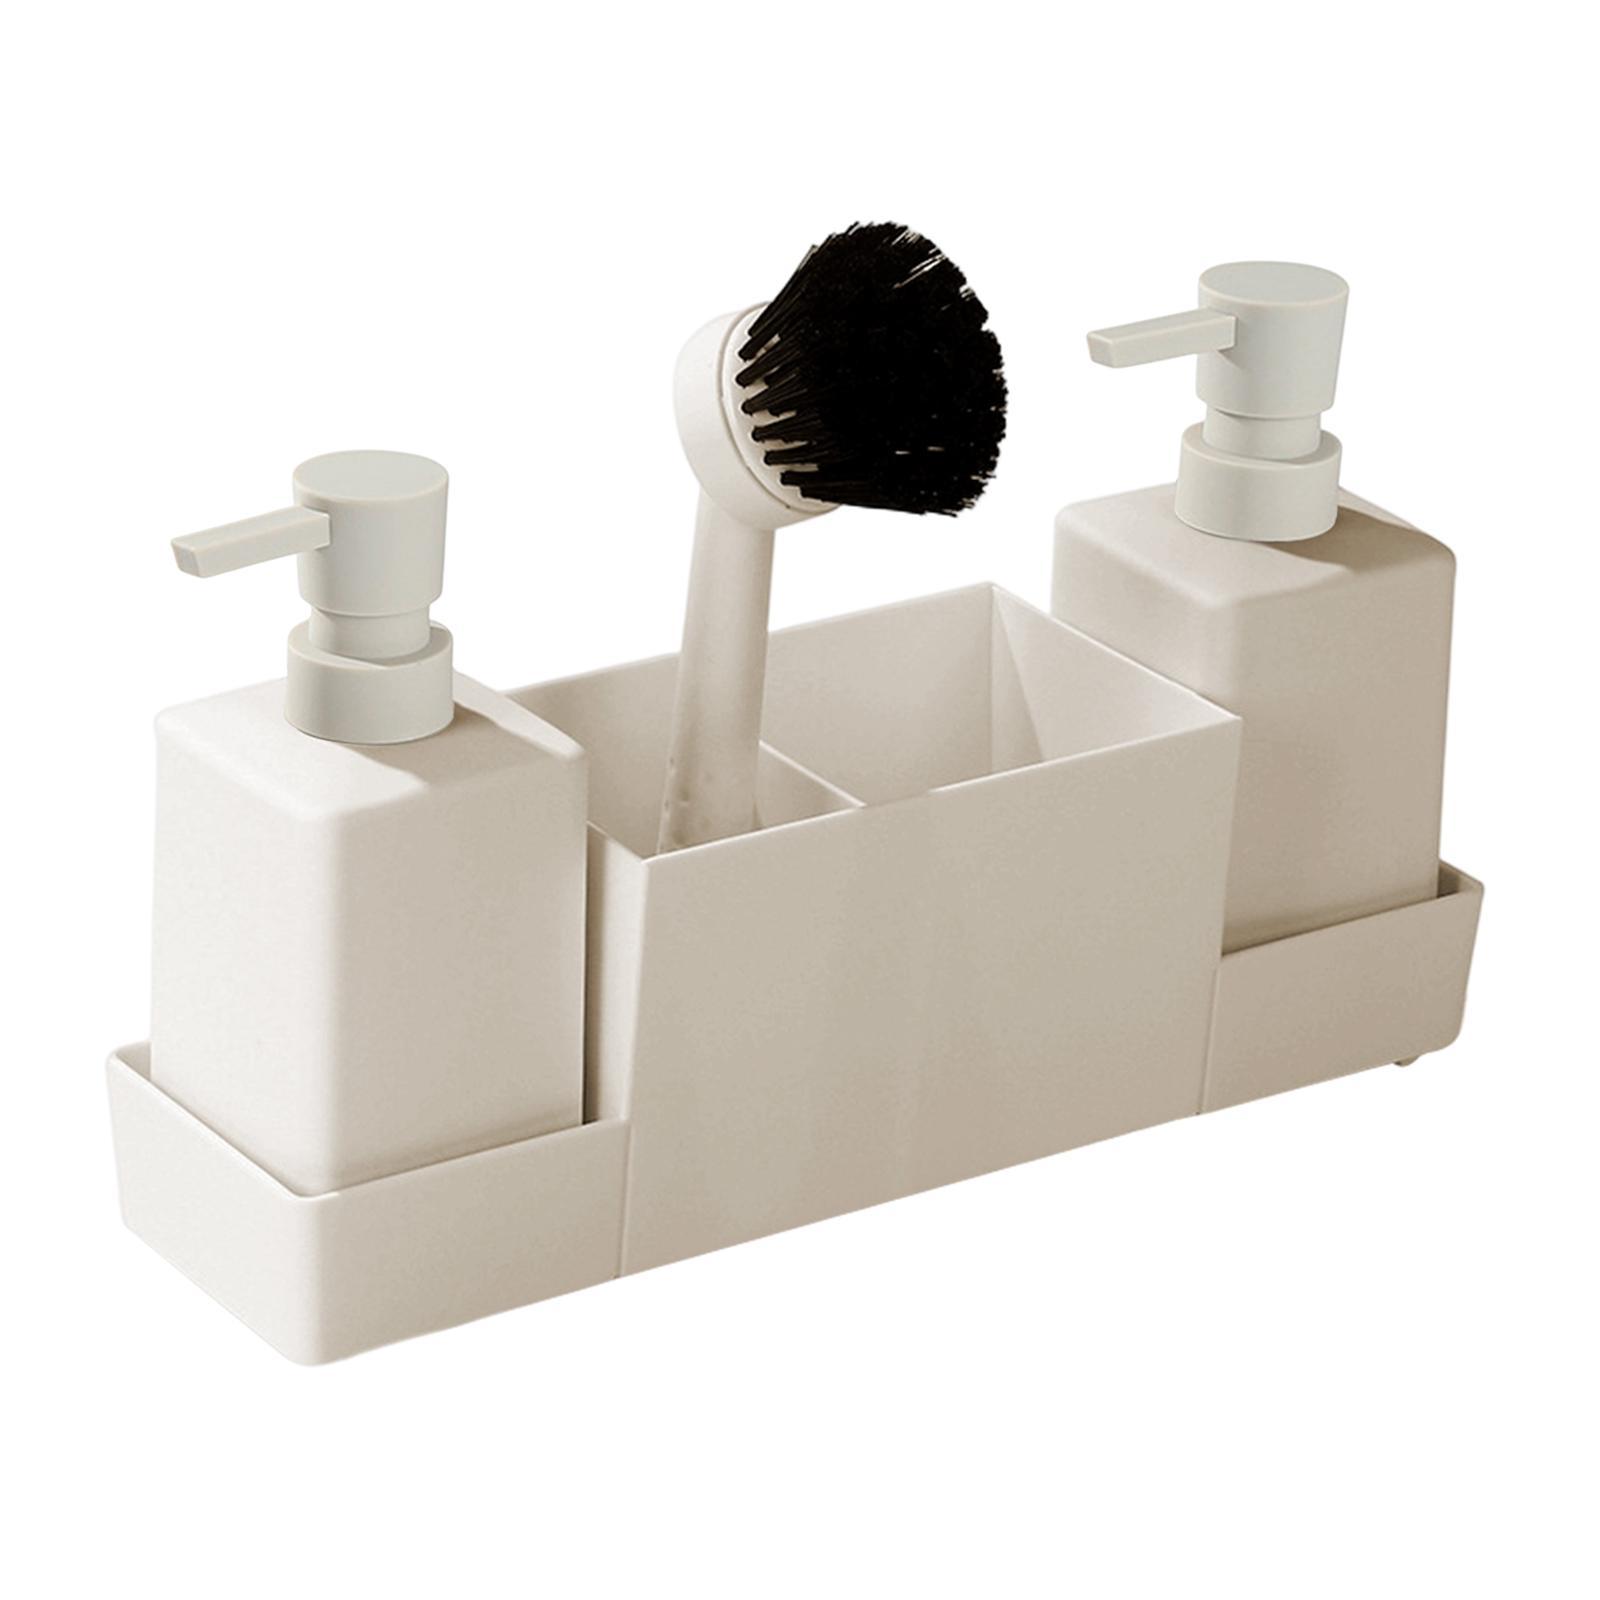 4x Kitchen Soap Dispenser with Sponge Holder Non Slip for Bathroom Home Sink